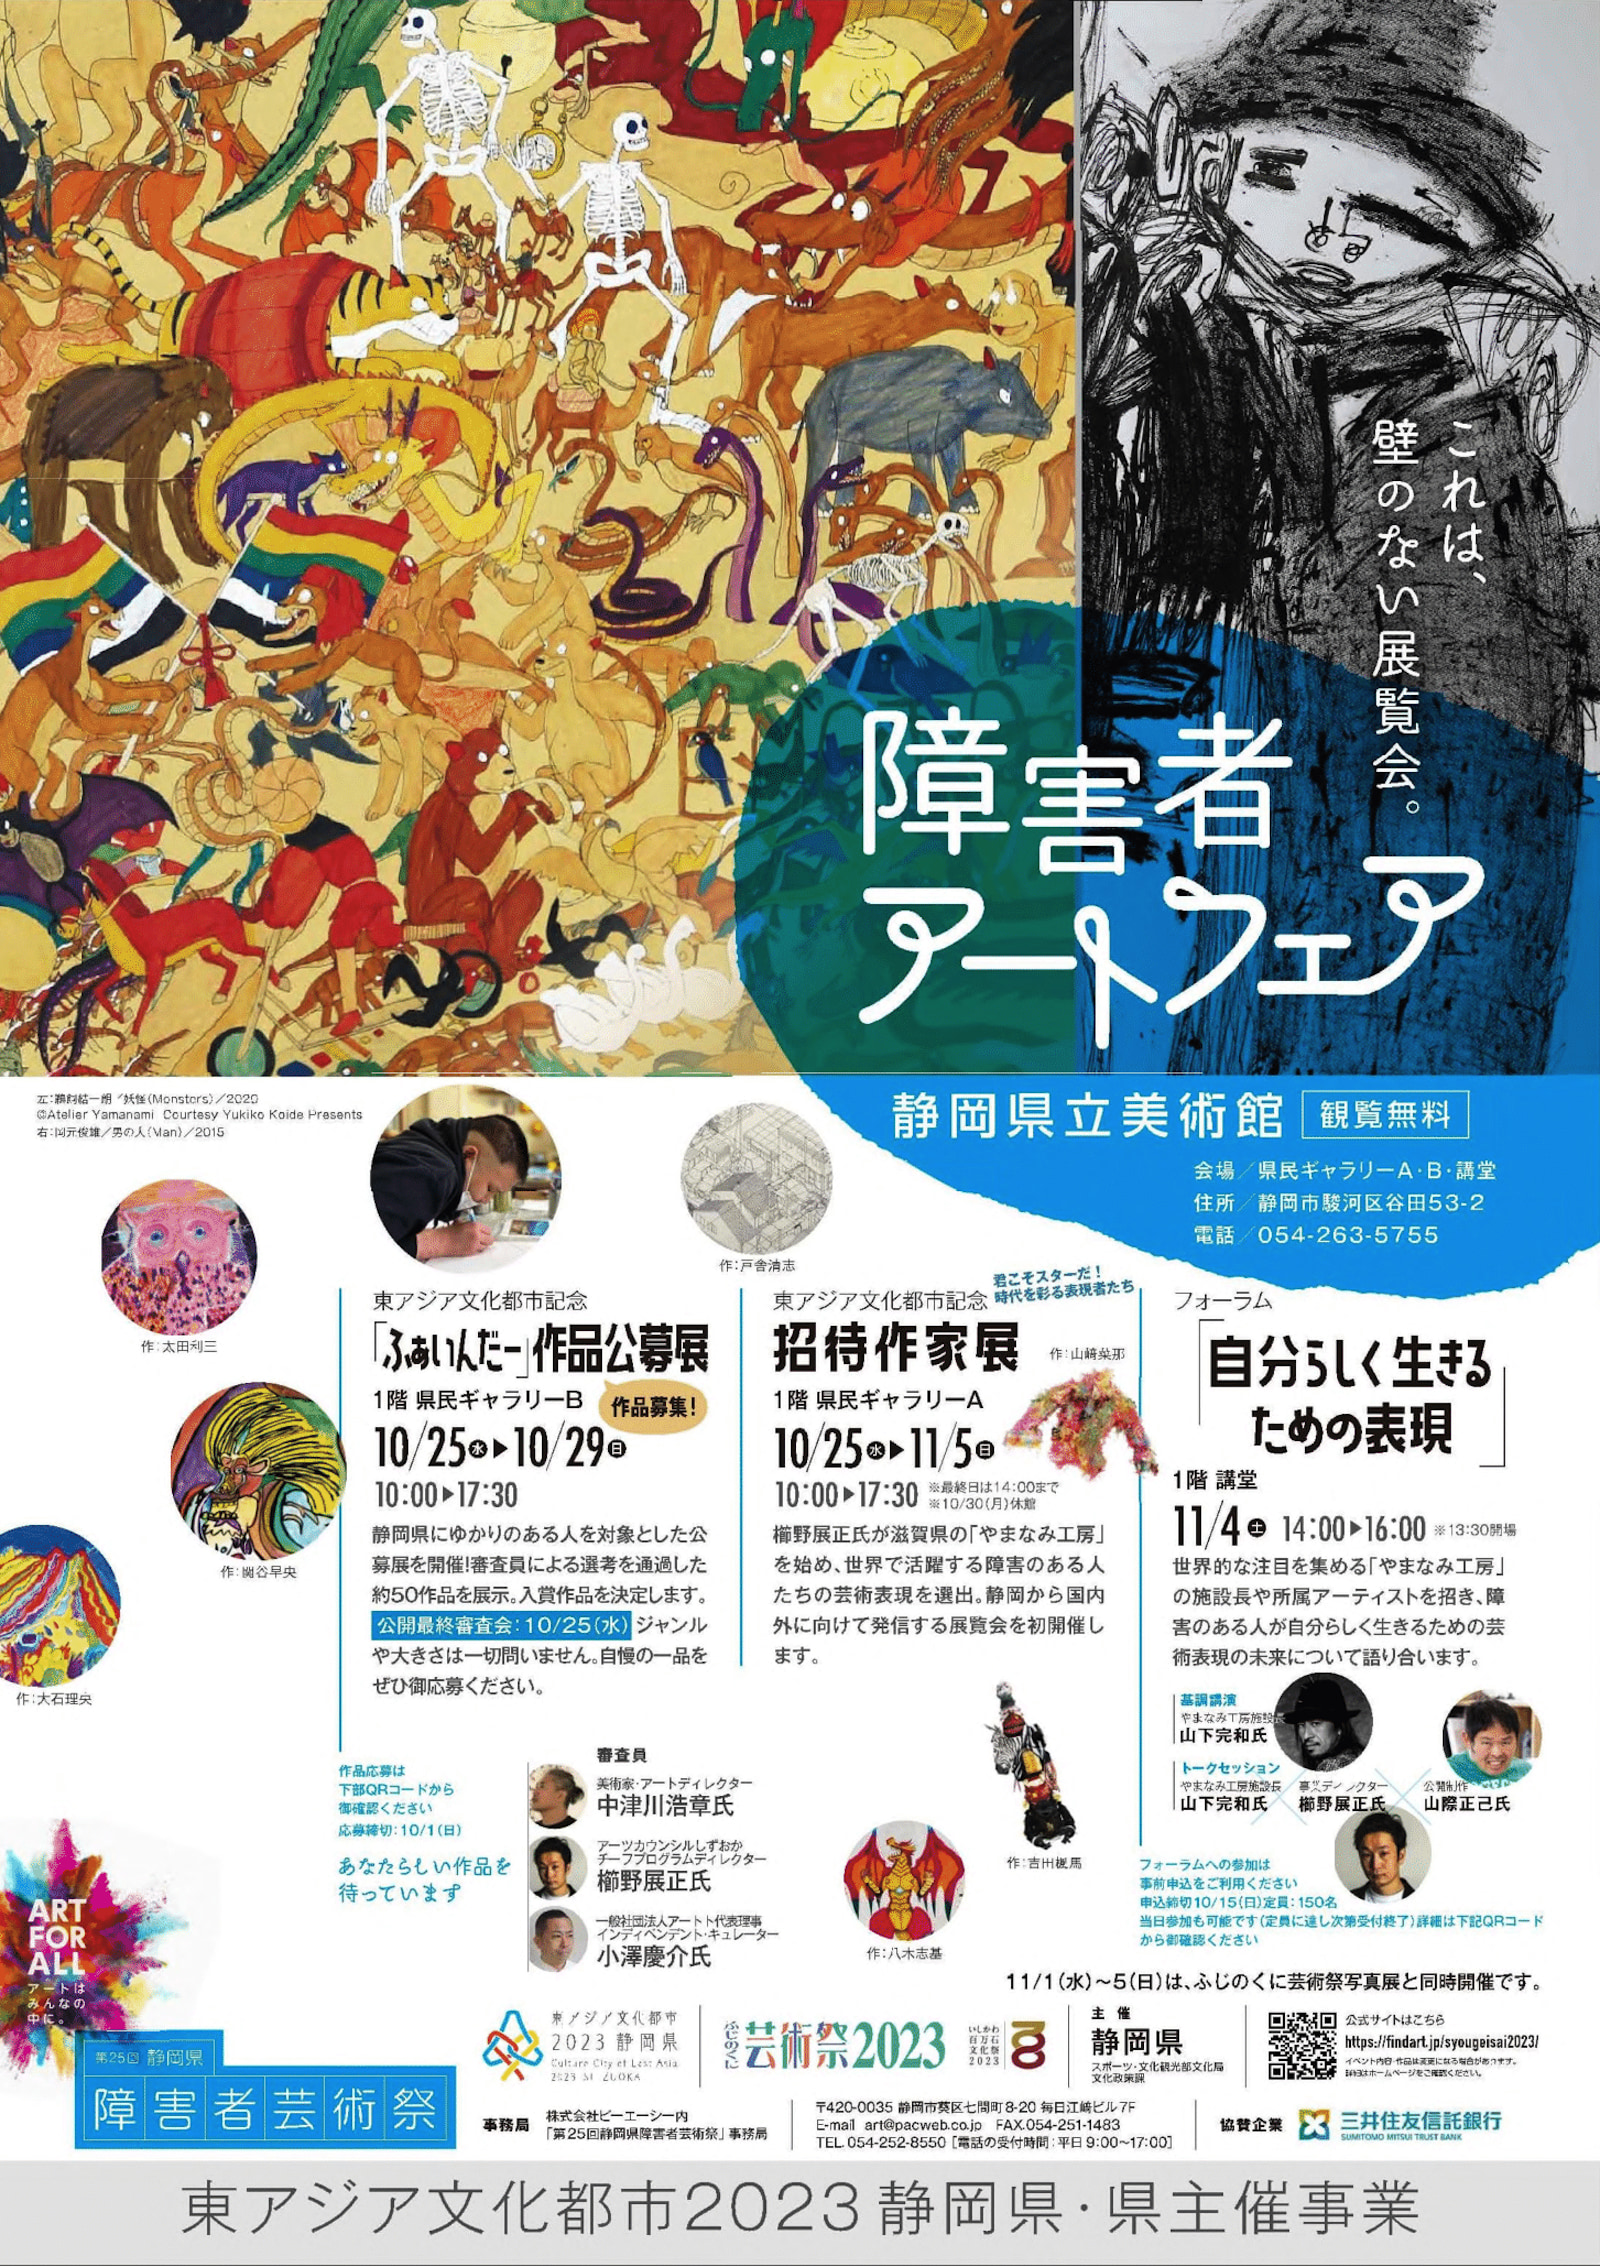 【画像】第25回静岡県障害者芸術祭「障害者アートフェア」チラシ。 詳しくは、静岡県障害者芸術祭の公式ウェブサイトをご確認ください。